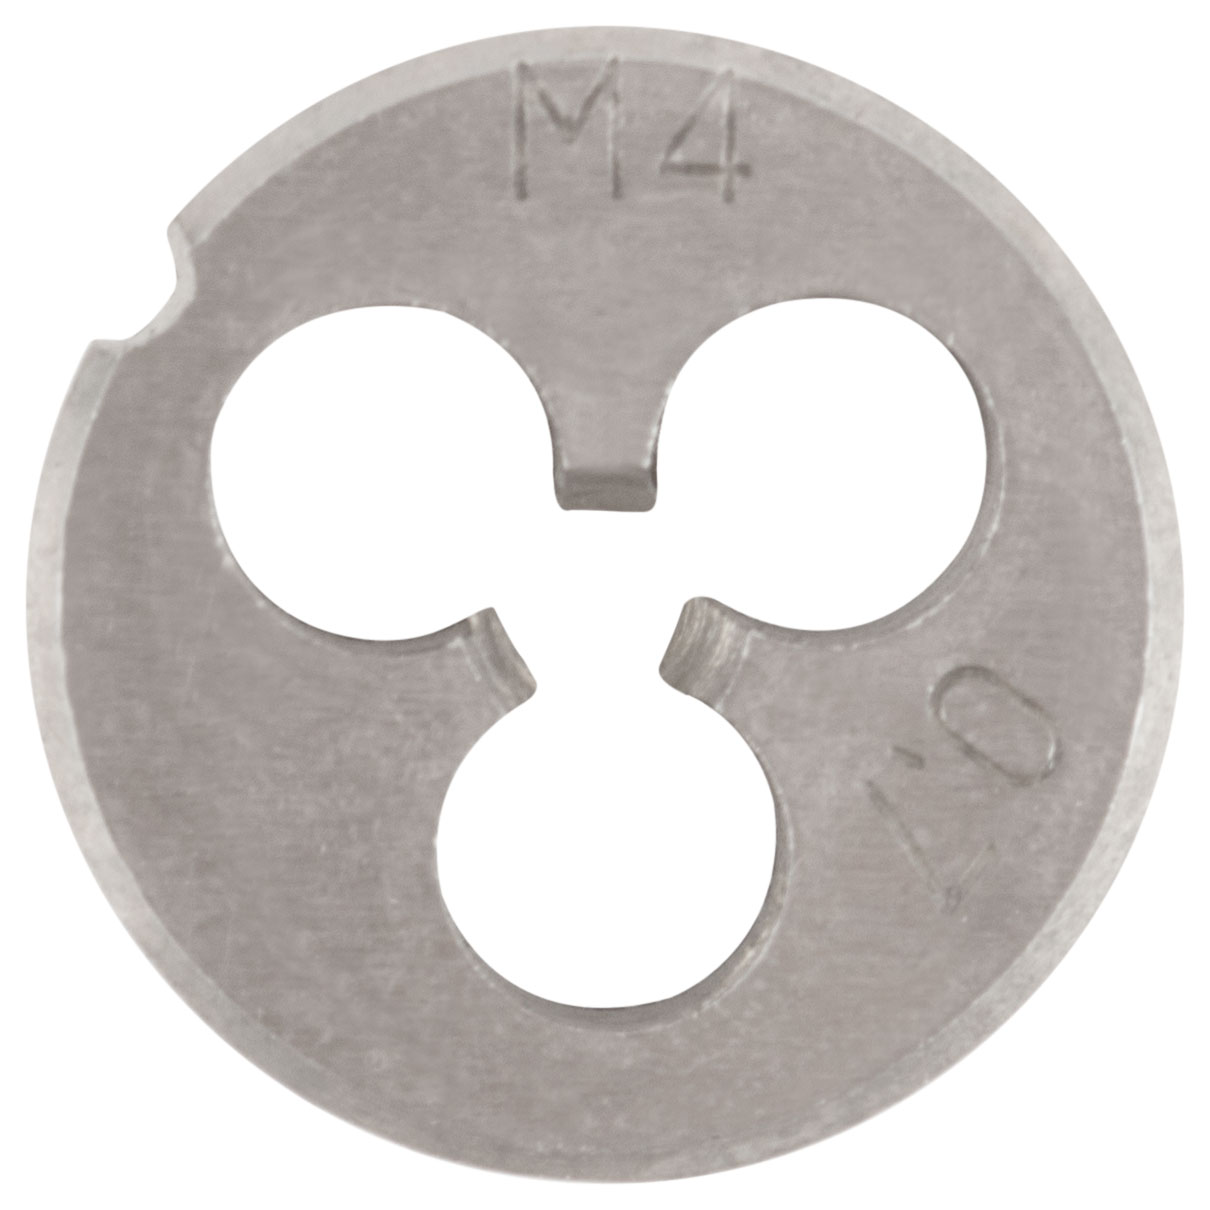 Плашка метрическая, легированная сталь М4х0,7 мм